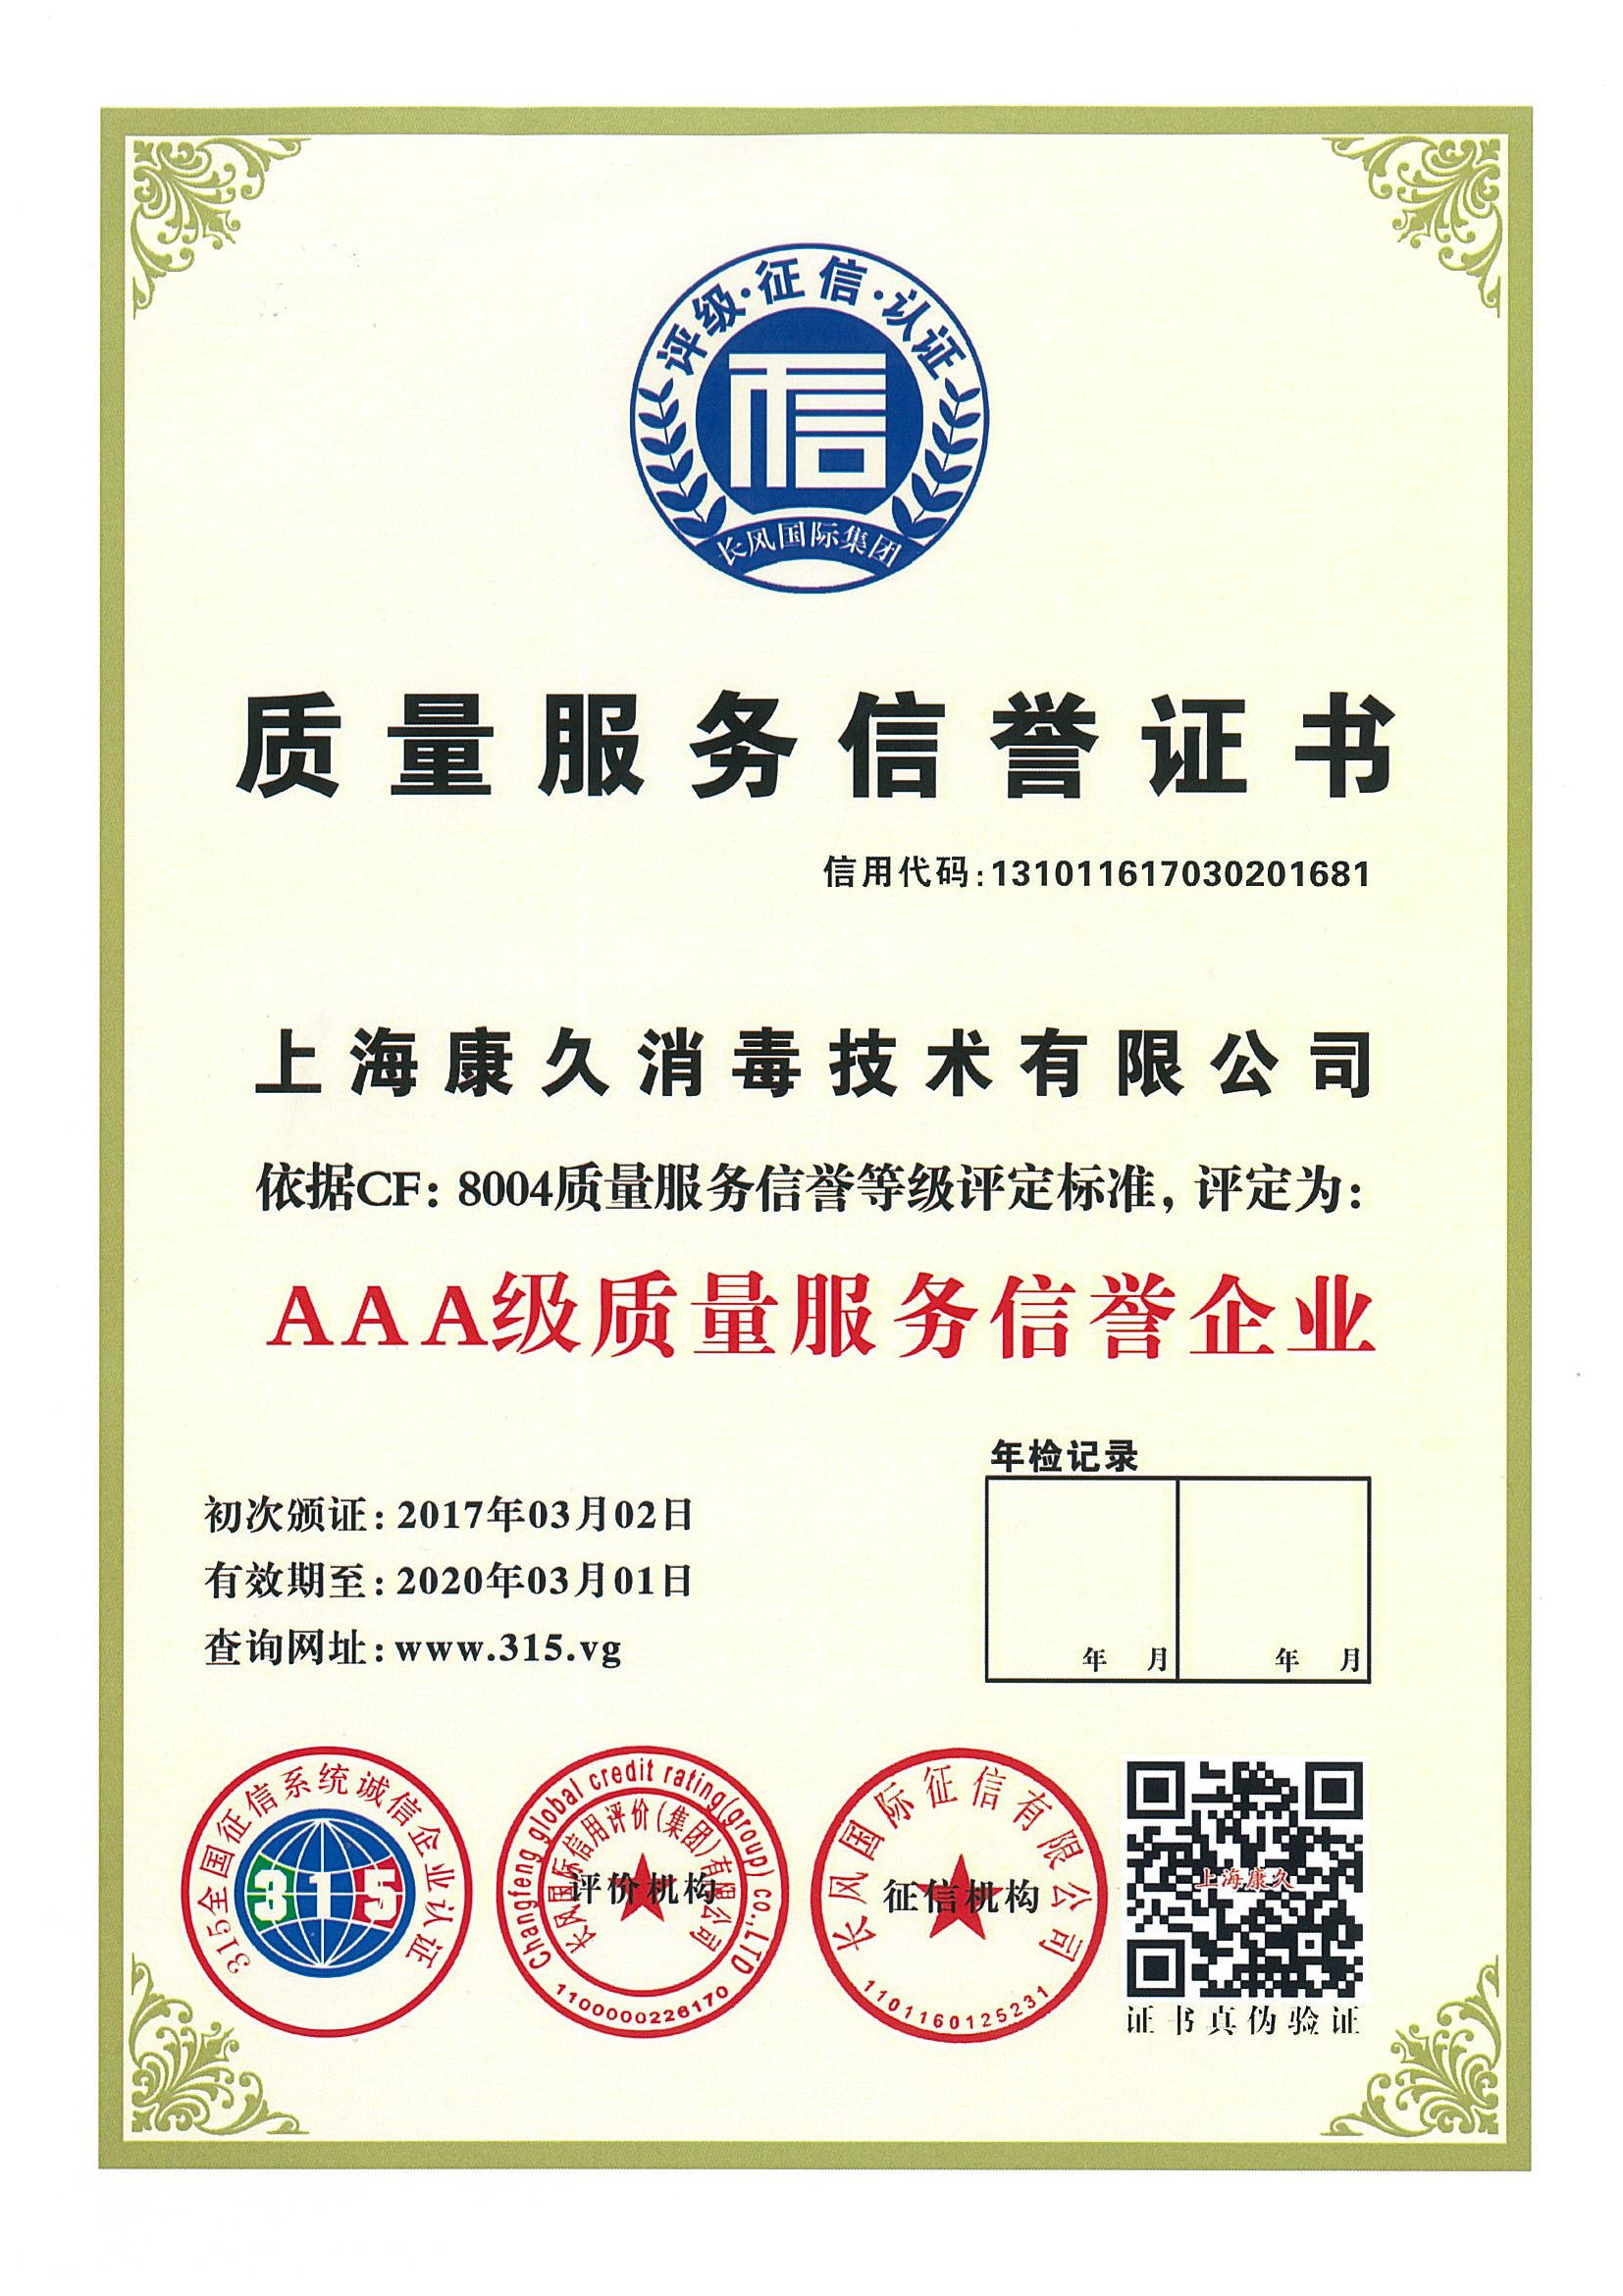 “南川质量服务信誉证书